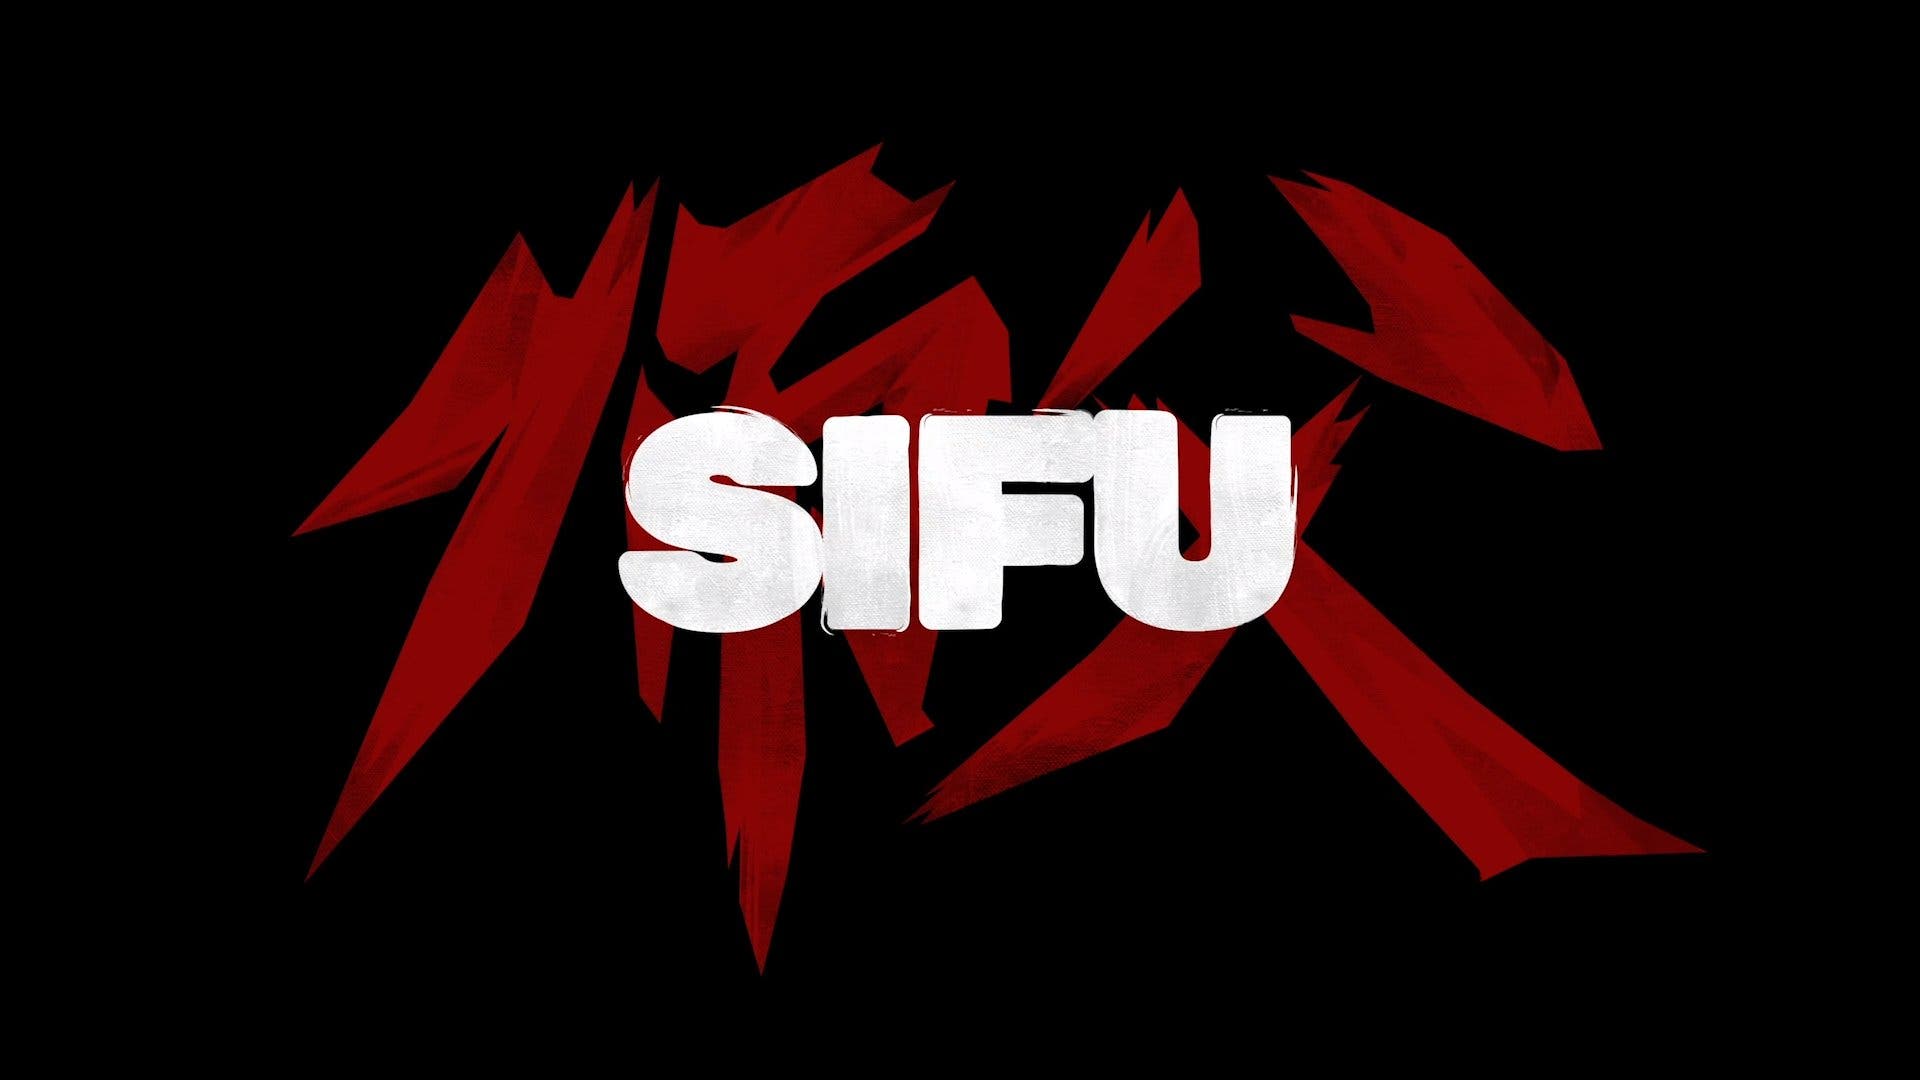 sifu meaning